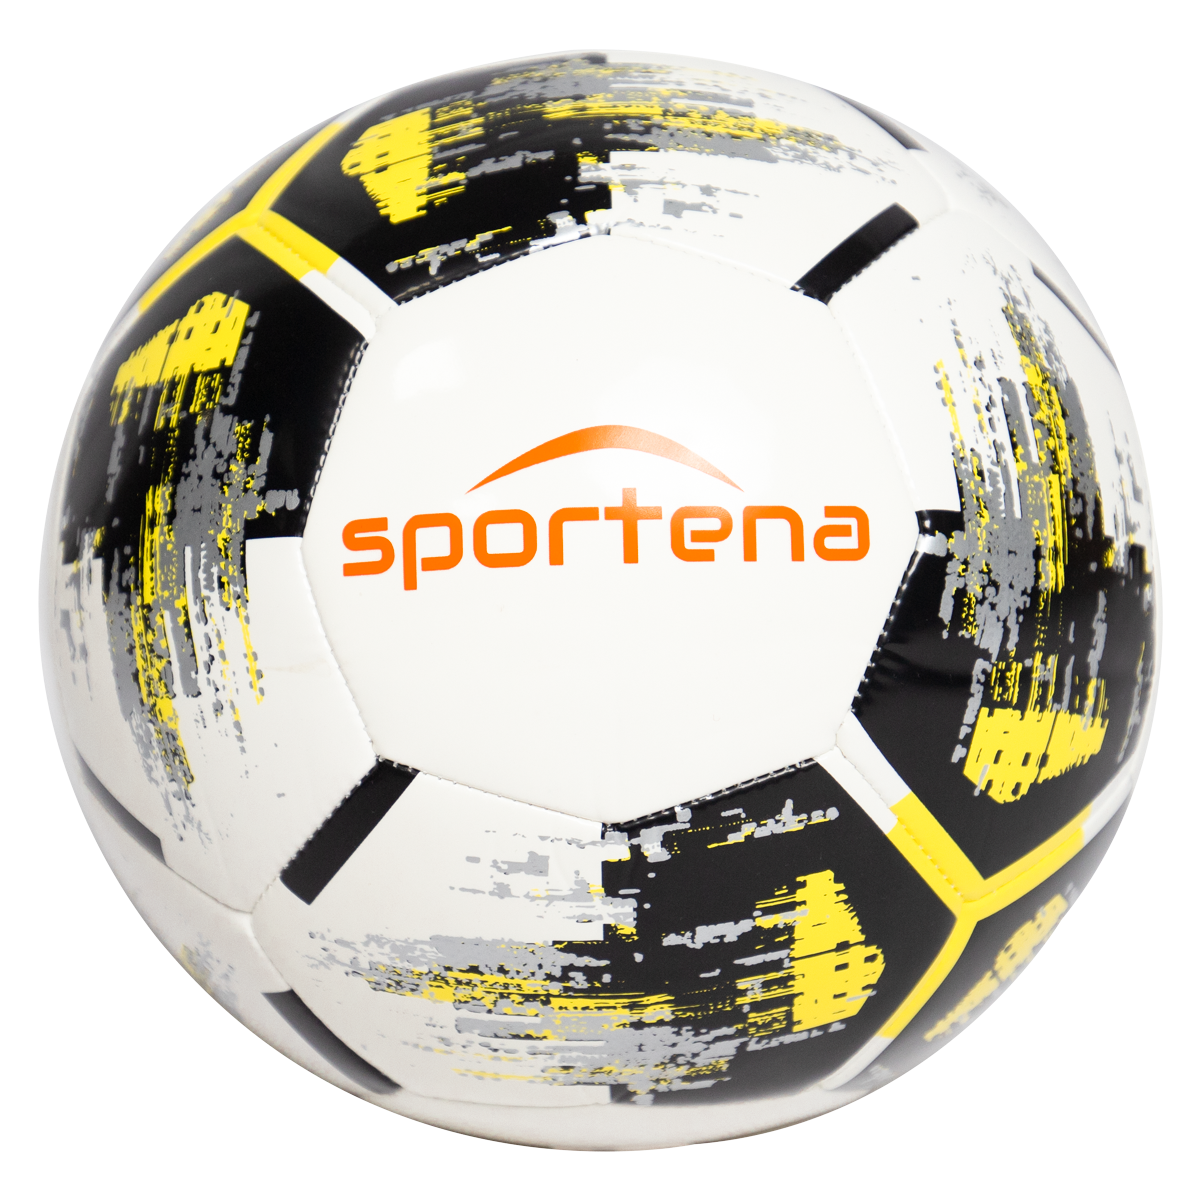 Football Sportena – White and Black- Yellow